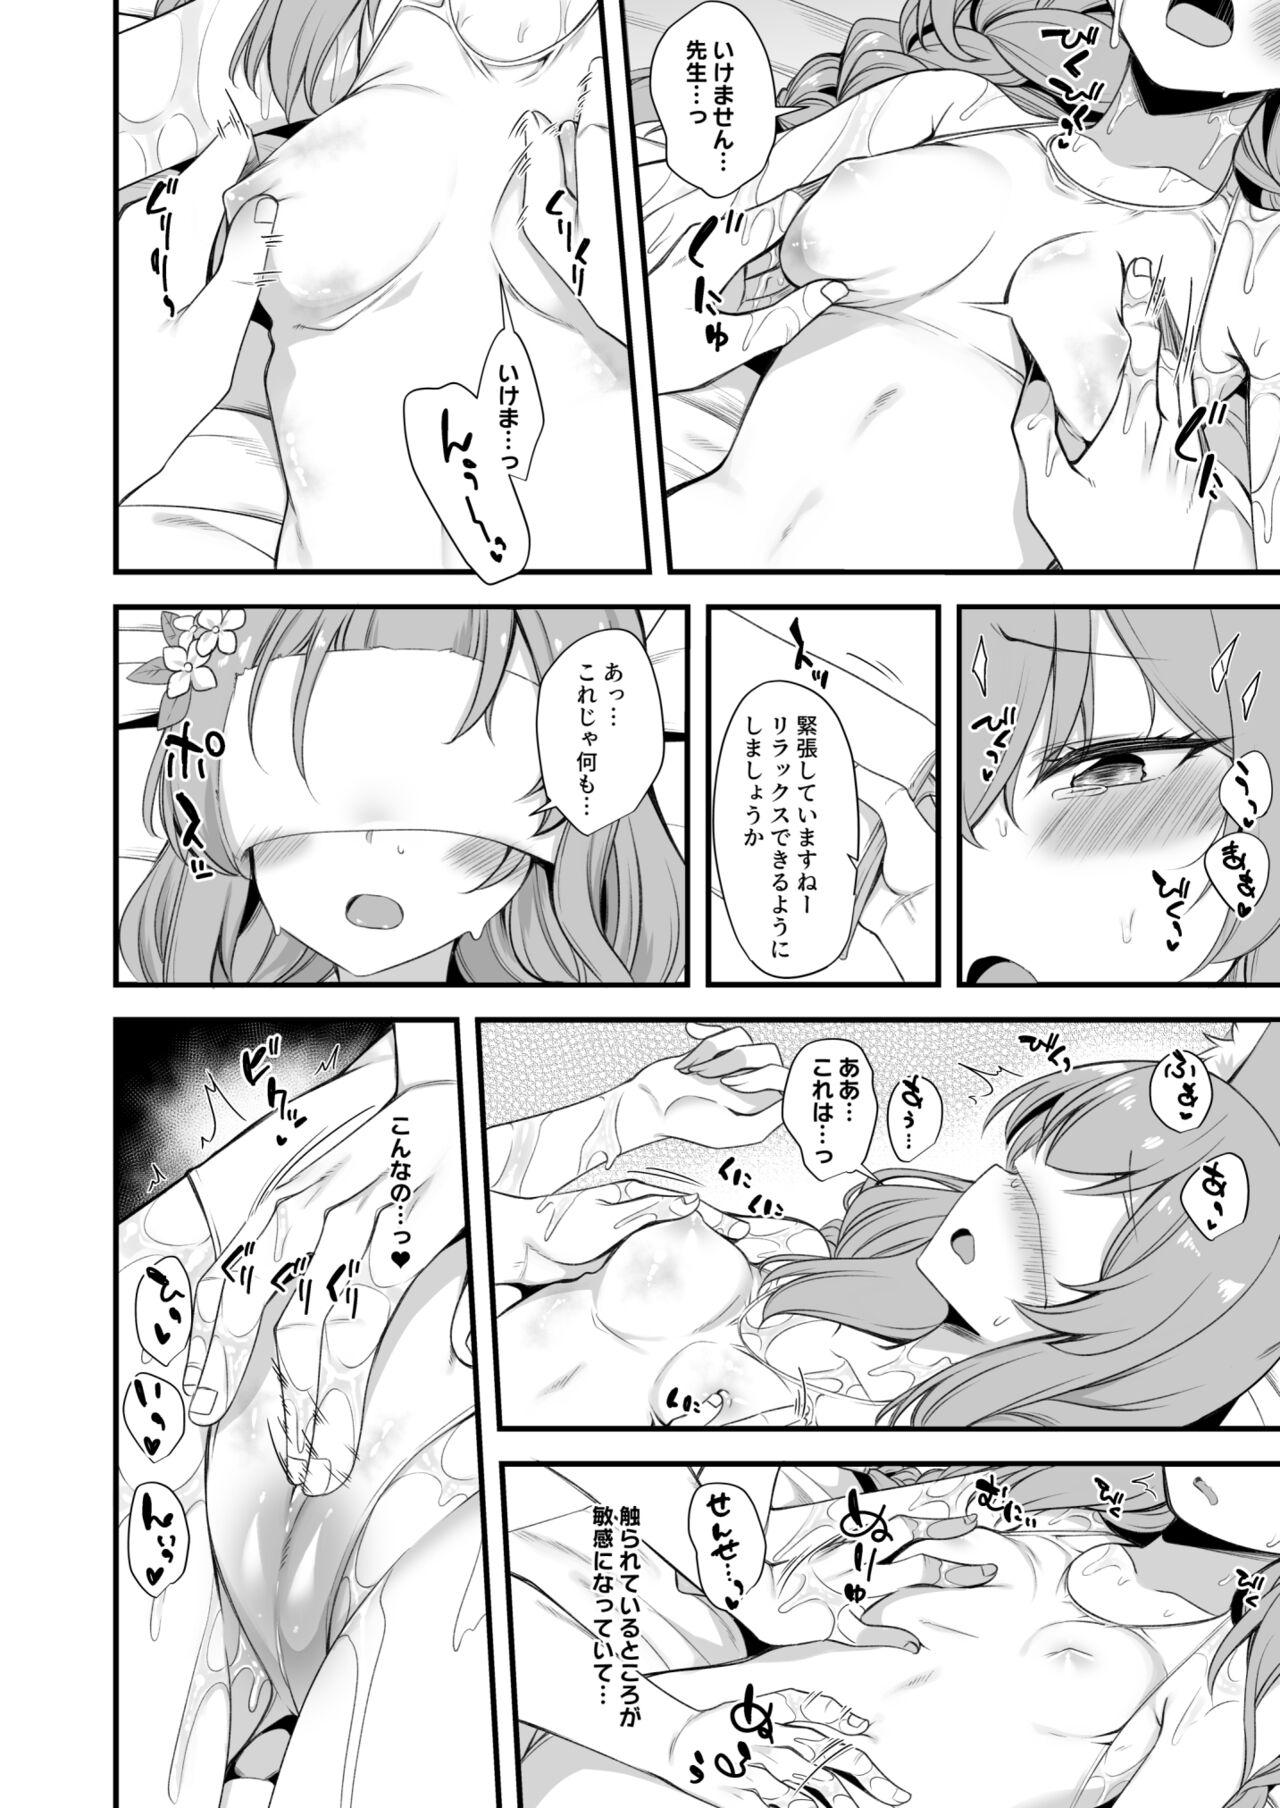 Mari Oil Massage Ecchi Manga 4